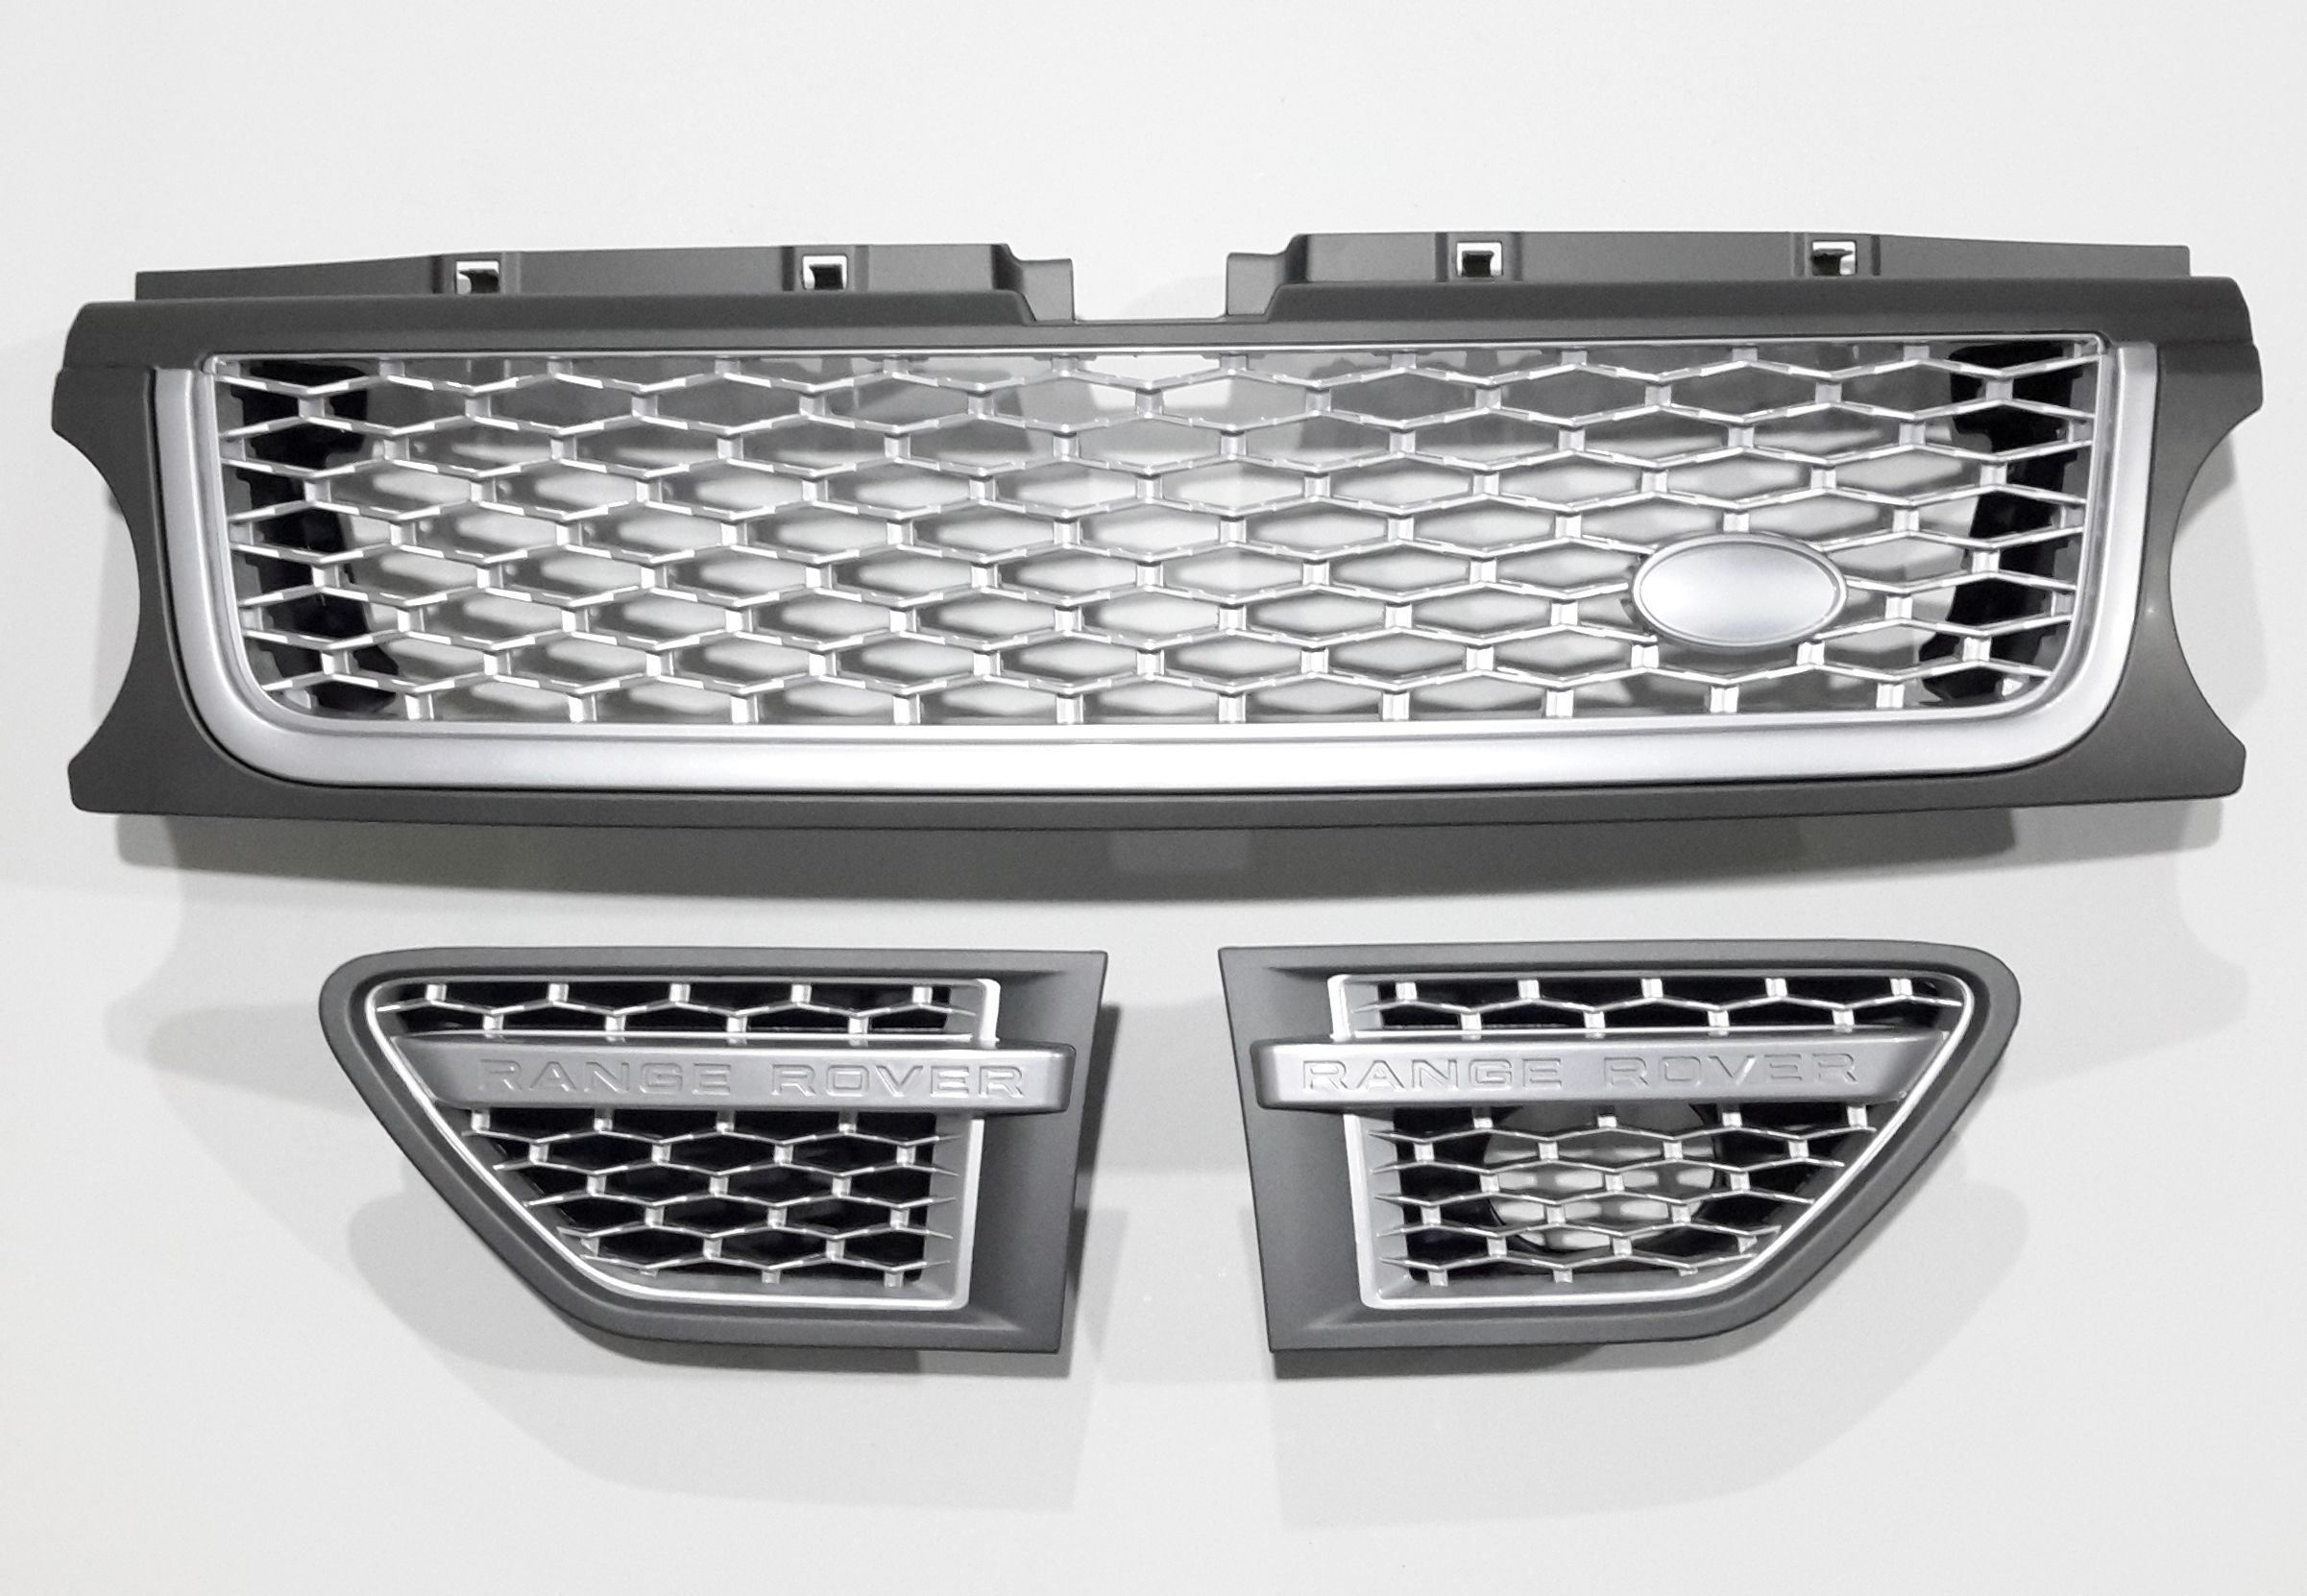 Комплект решеток Range Rover Sport 2010 Autobigraphy. Оригинальный дизайн, Серый -серебро-серебро